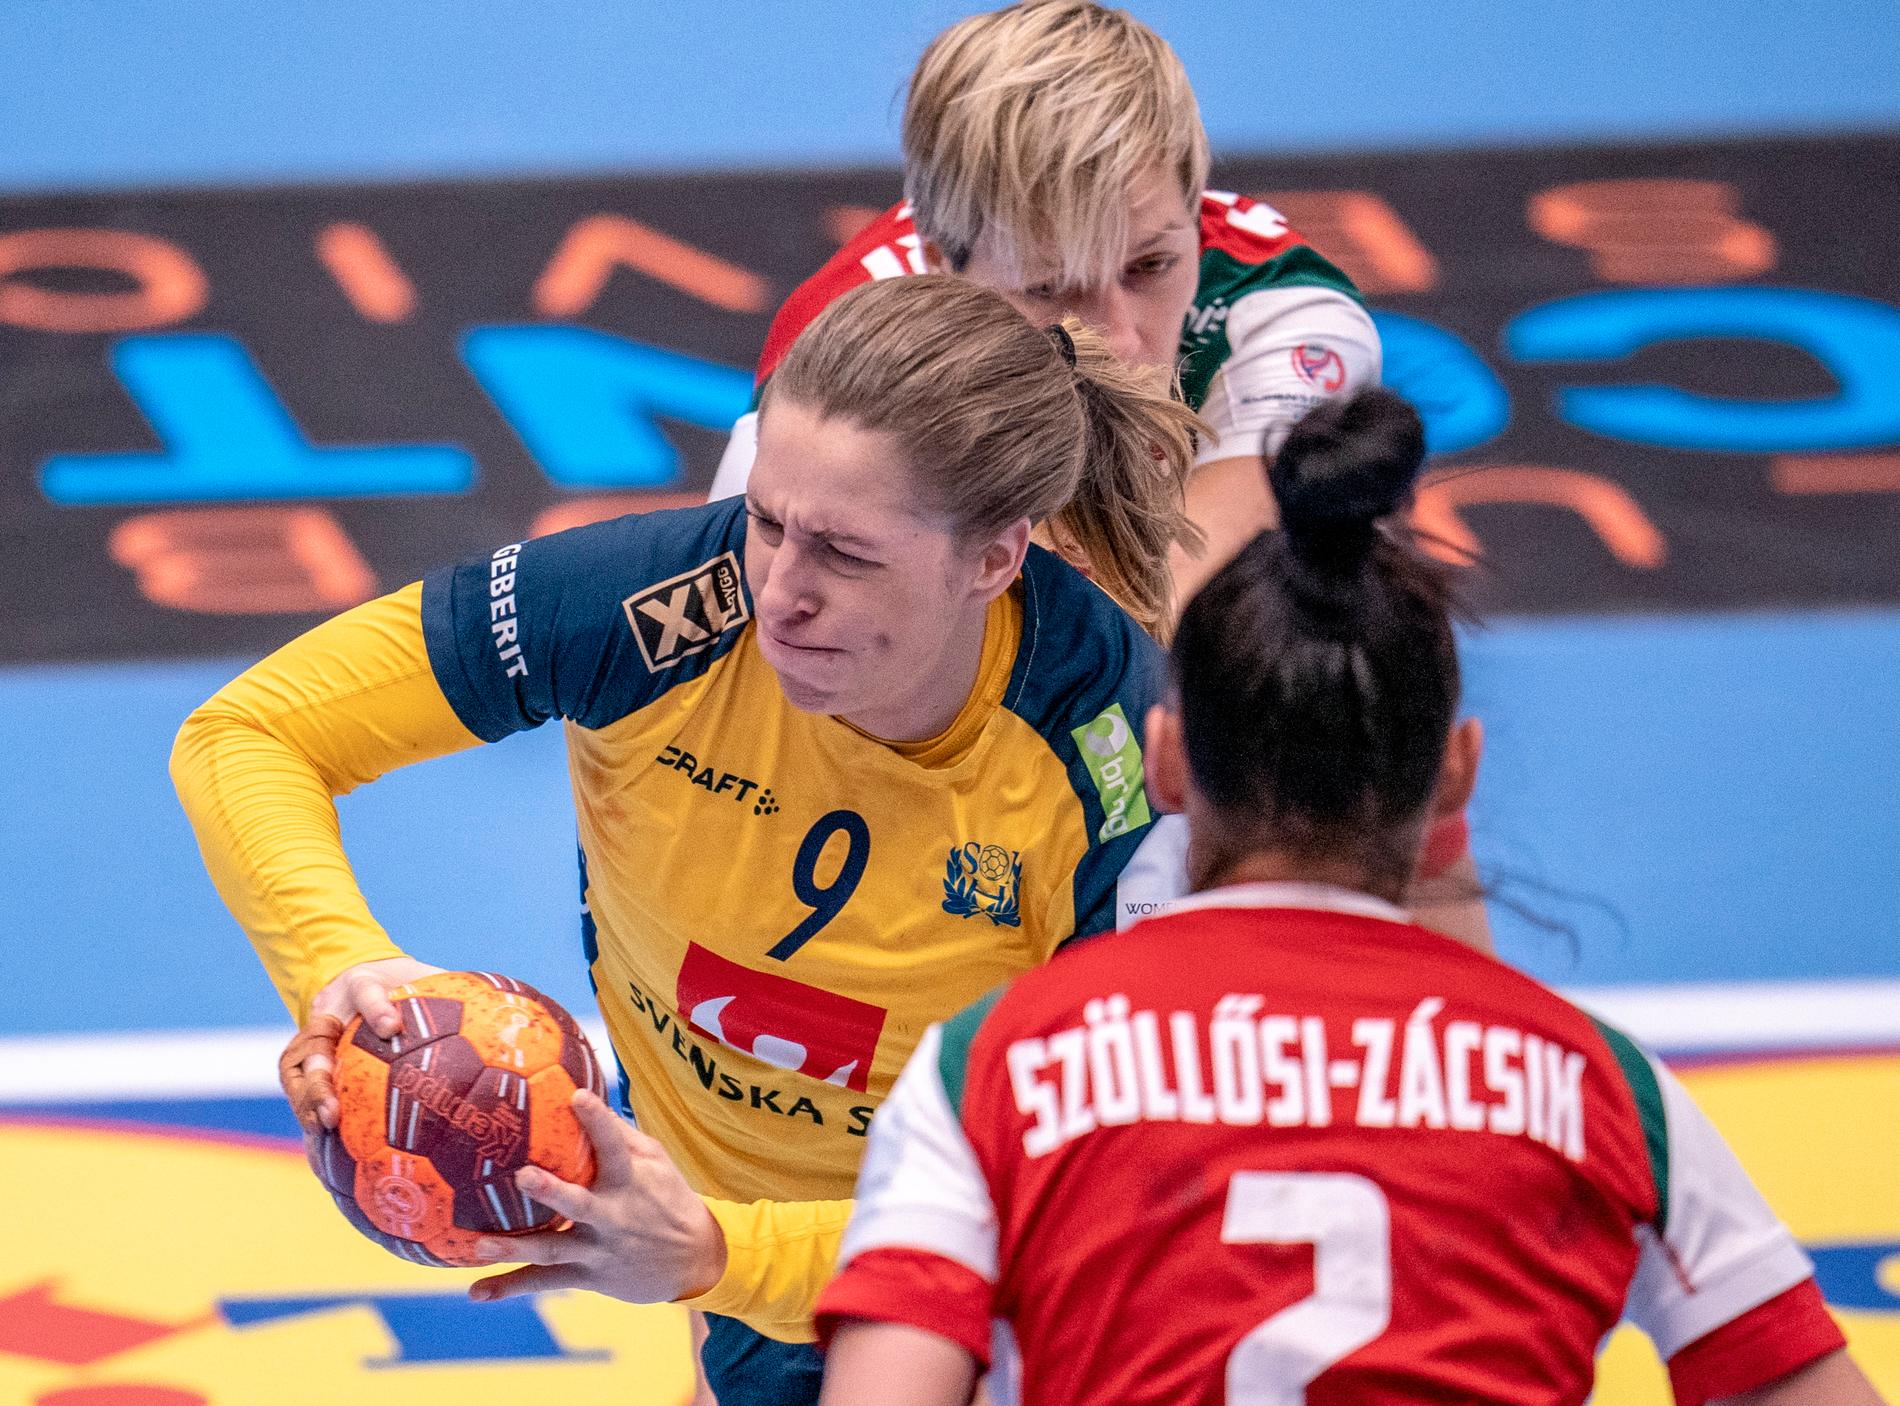 Melissa Petrén var en av de bästa svenskorna i landskampen mot Ungern, som Ungern vann med 28-27.